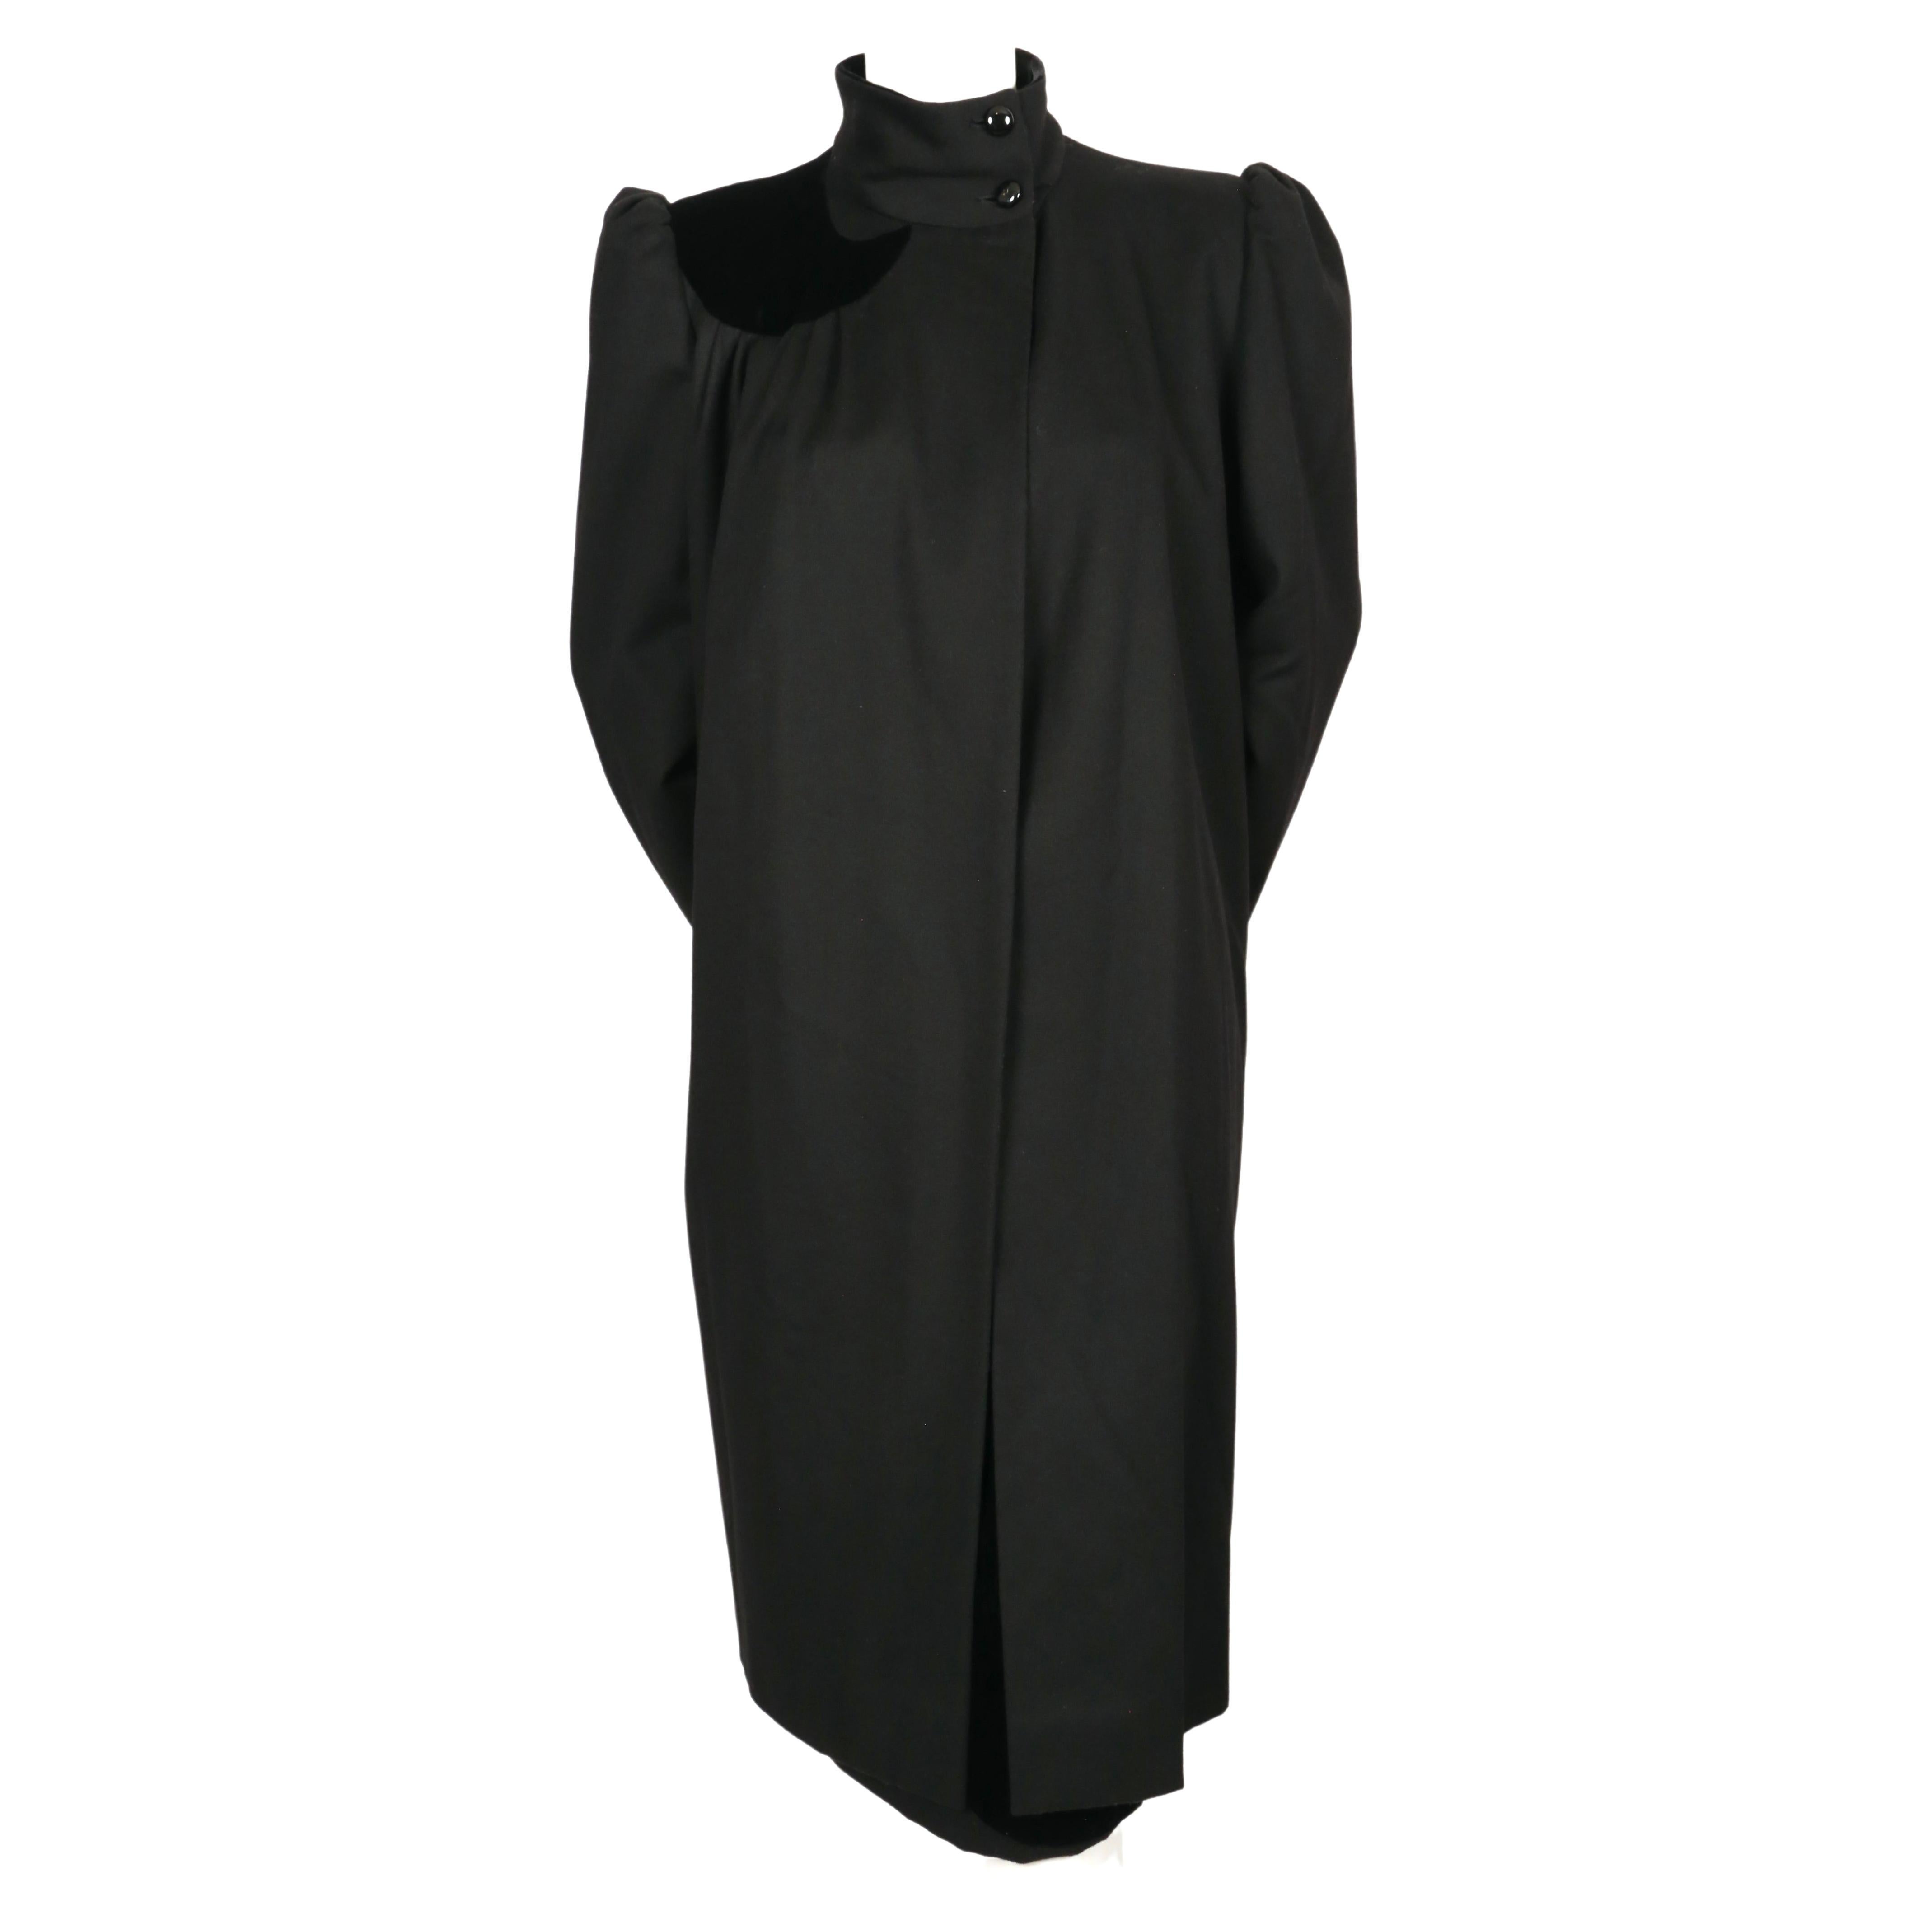 Schwarzer Wollmantel und passender Rock mit Samtdetail, entworfen von Valentino in den 1980er Jahren. Die Jacke trägt die Größe 8 und der Rock hat kein Größenetikett. Der Mantel misst ungefähr: Schulter 15,5